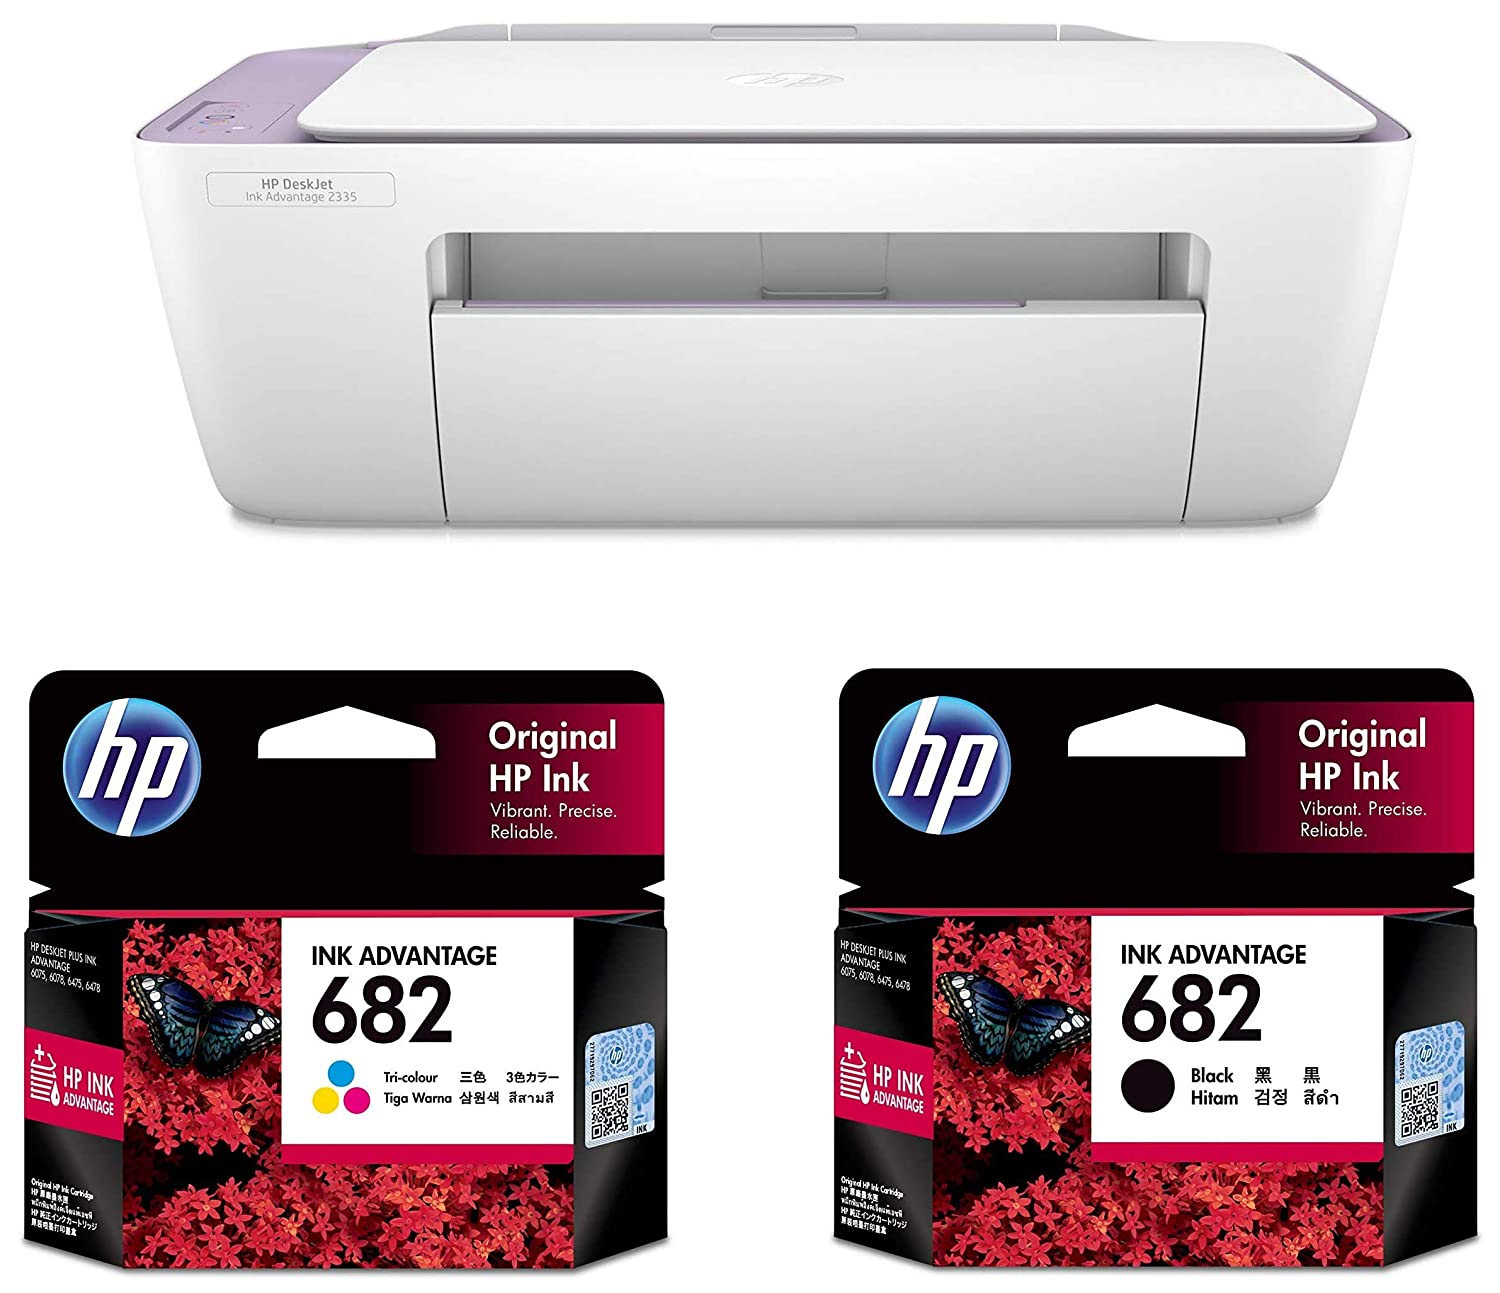 คำอธิบายเพิ่มเติมเกี่ยวกับ เครื่องพิมพ์ เครื่องปริ้นท์  HP DeskJet All-in-One Printer ปริ้นท์ สแกน ถ่ายเอกสาร พร้อมหมึก1ชุด อุปกรณ์ครบ ใช้งานได้เลย/ hp2335 2337